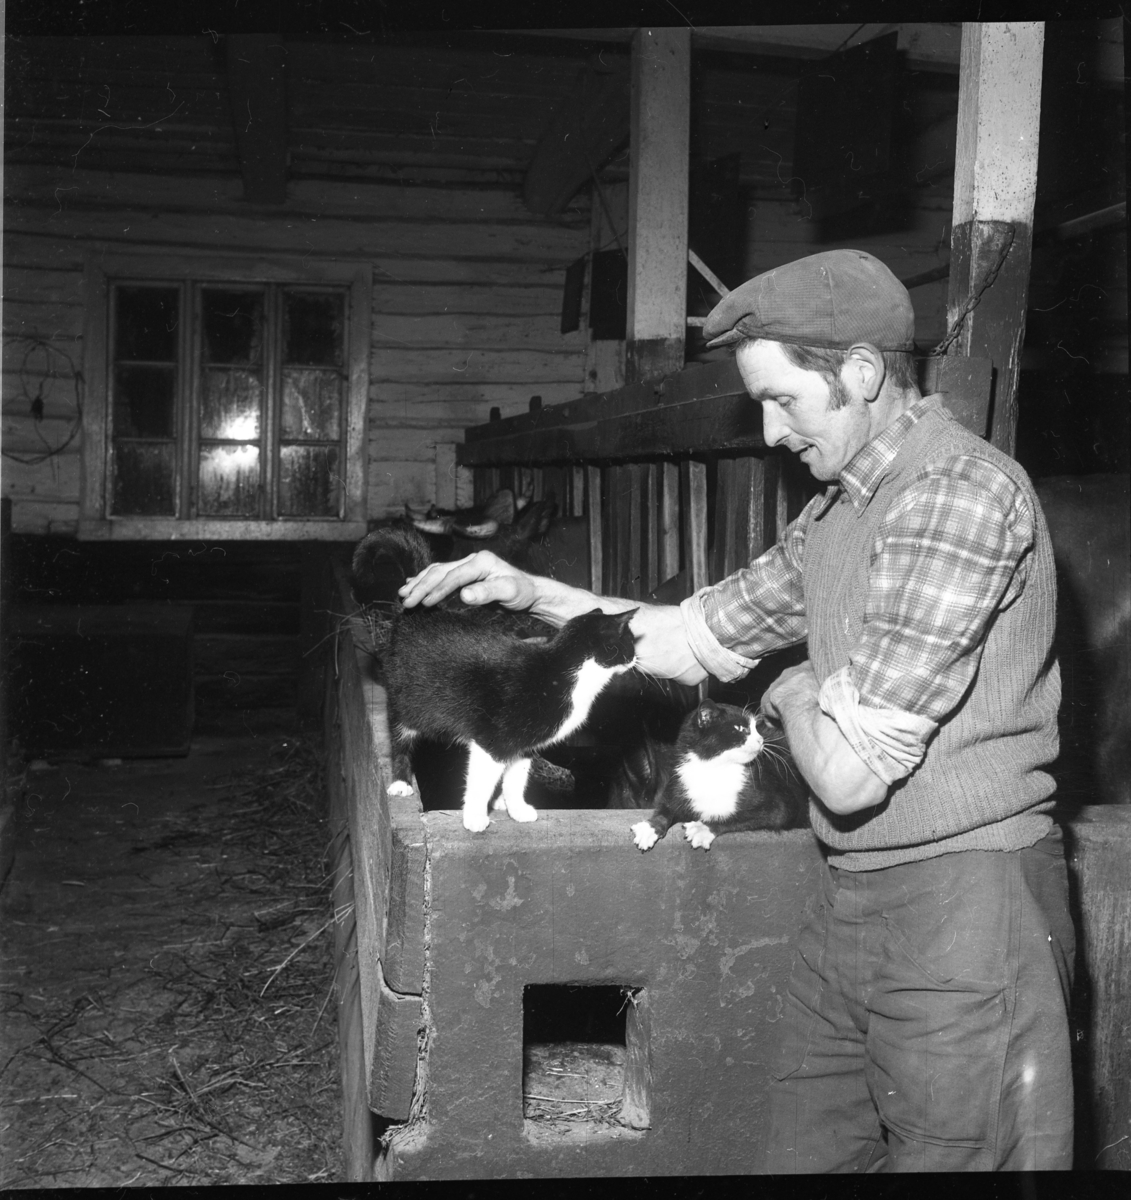 En man med keps står i en ladugård och klappar två katter. Kor i bakgrunden.